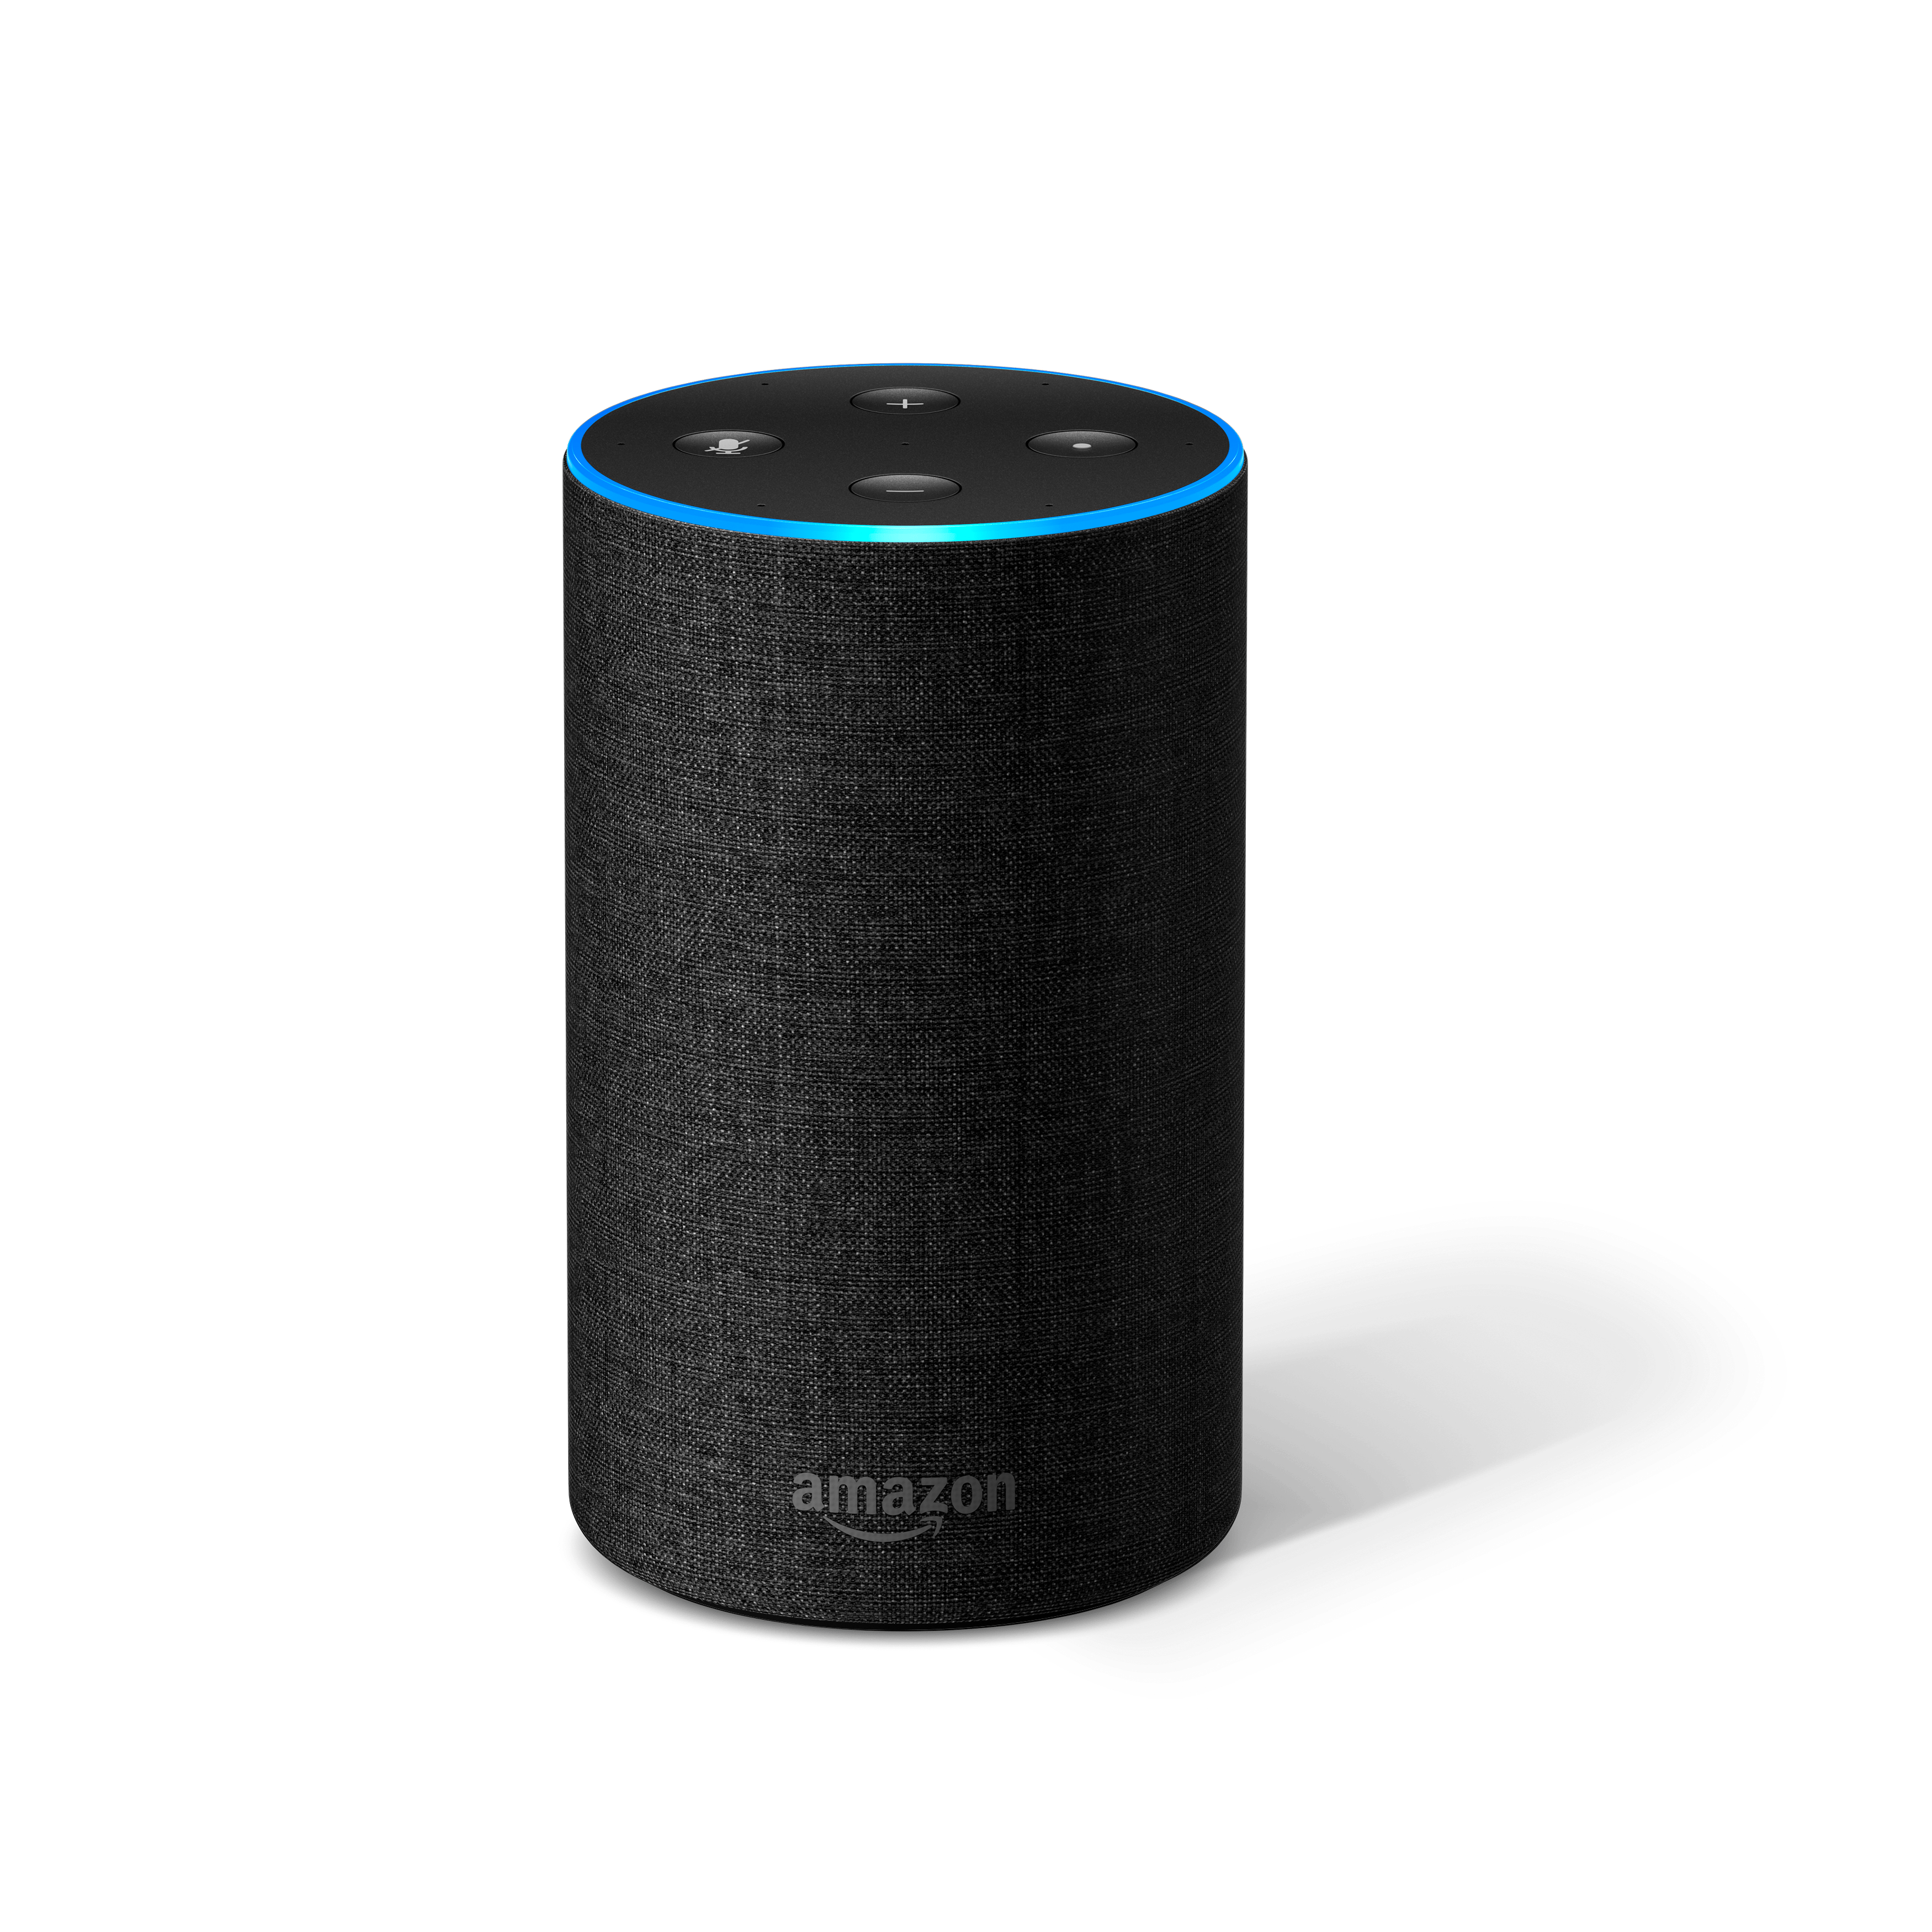  Yhteensopiva Amazon Alexan ja Google Homen kanssa. Husqvarna Automower® ryhtyy työhön, kun sille antaa äänikomennon älykaiuttimen kautta.